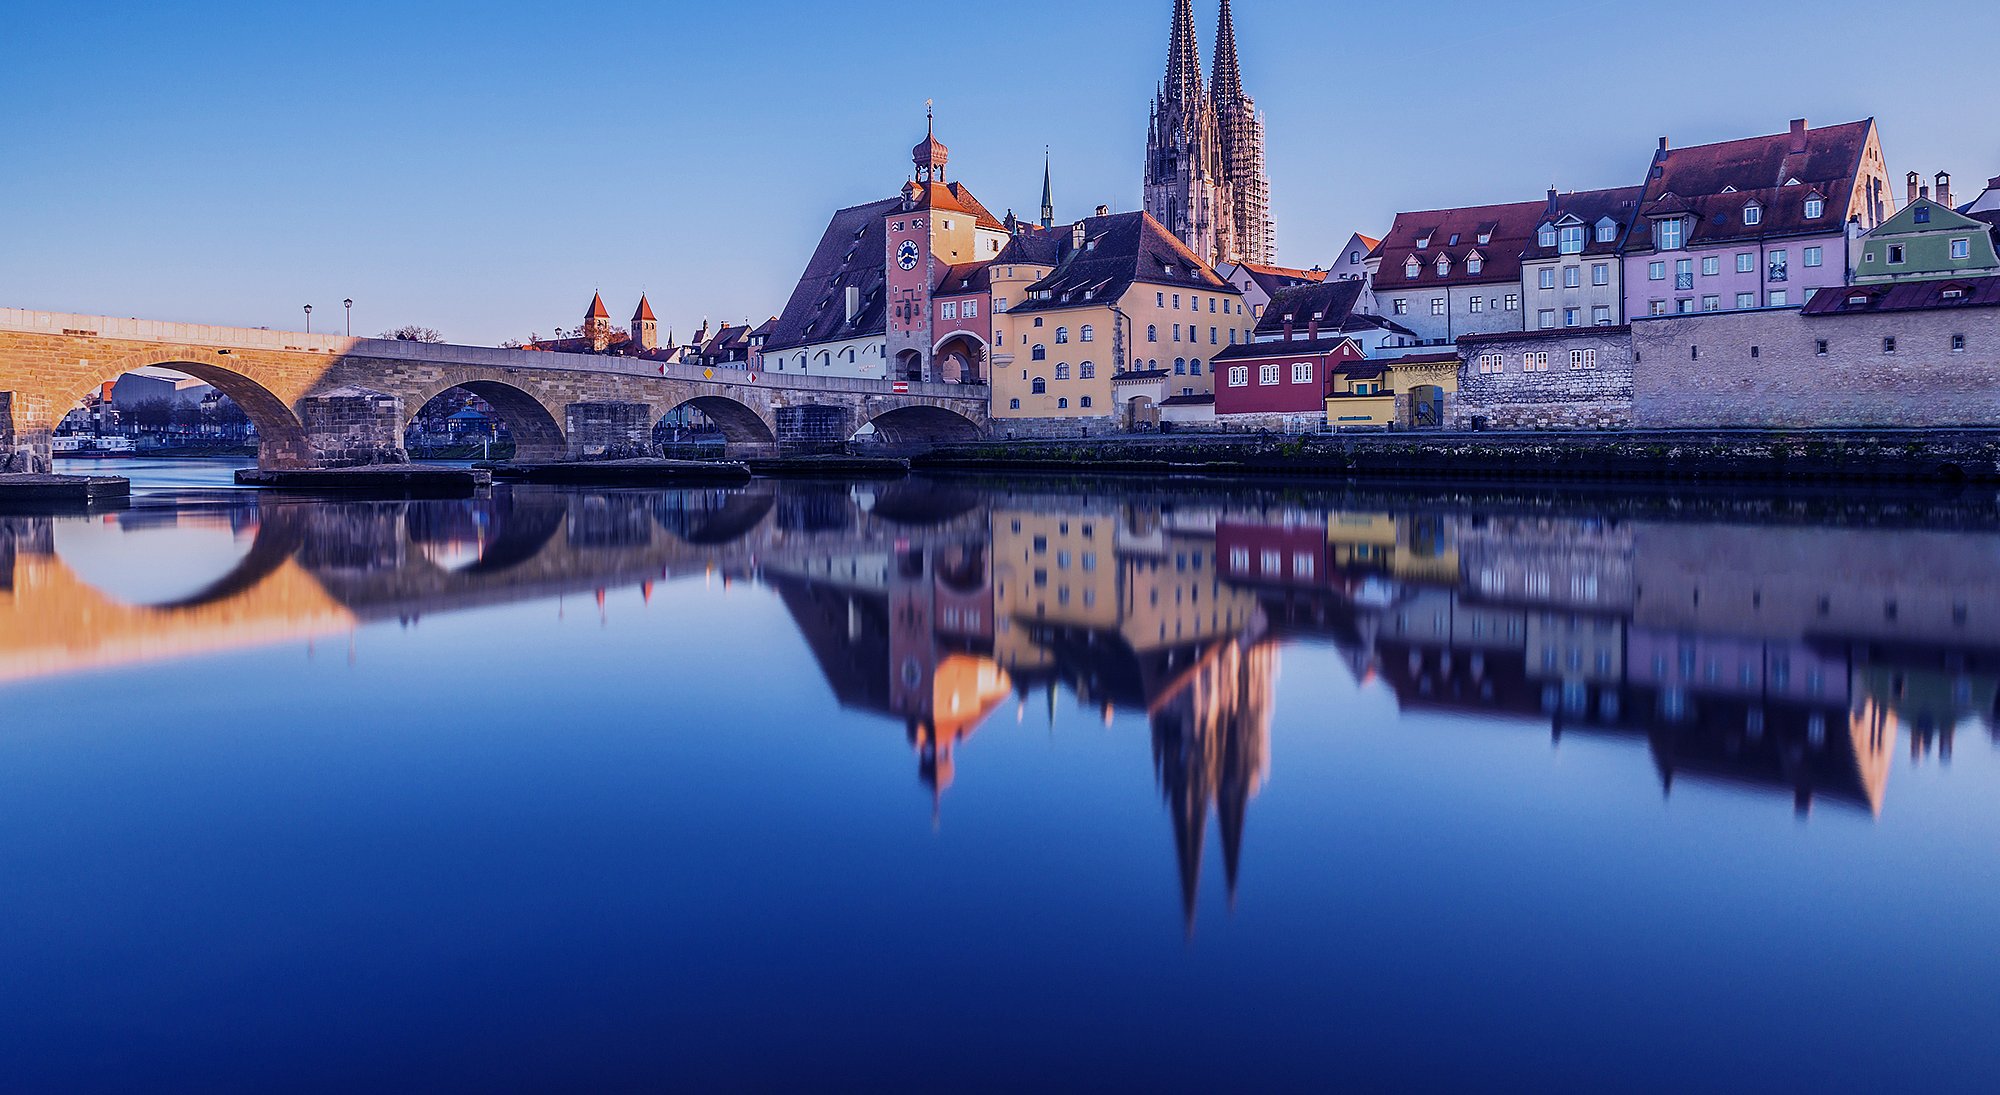 Baugemeinde Regensburg - Ihr Partner für Verkauf und Vermietung von Immobilien in und um Regensburg